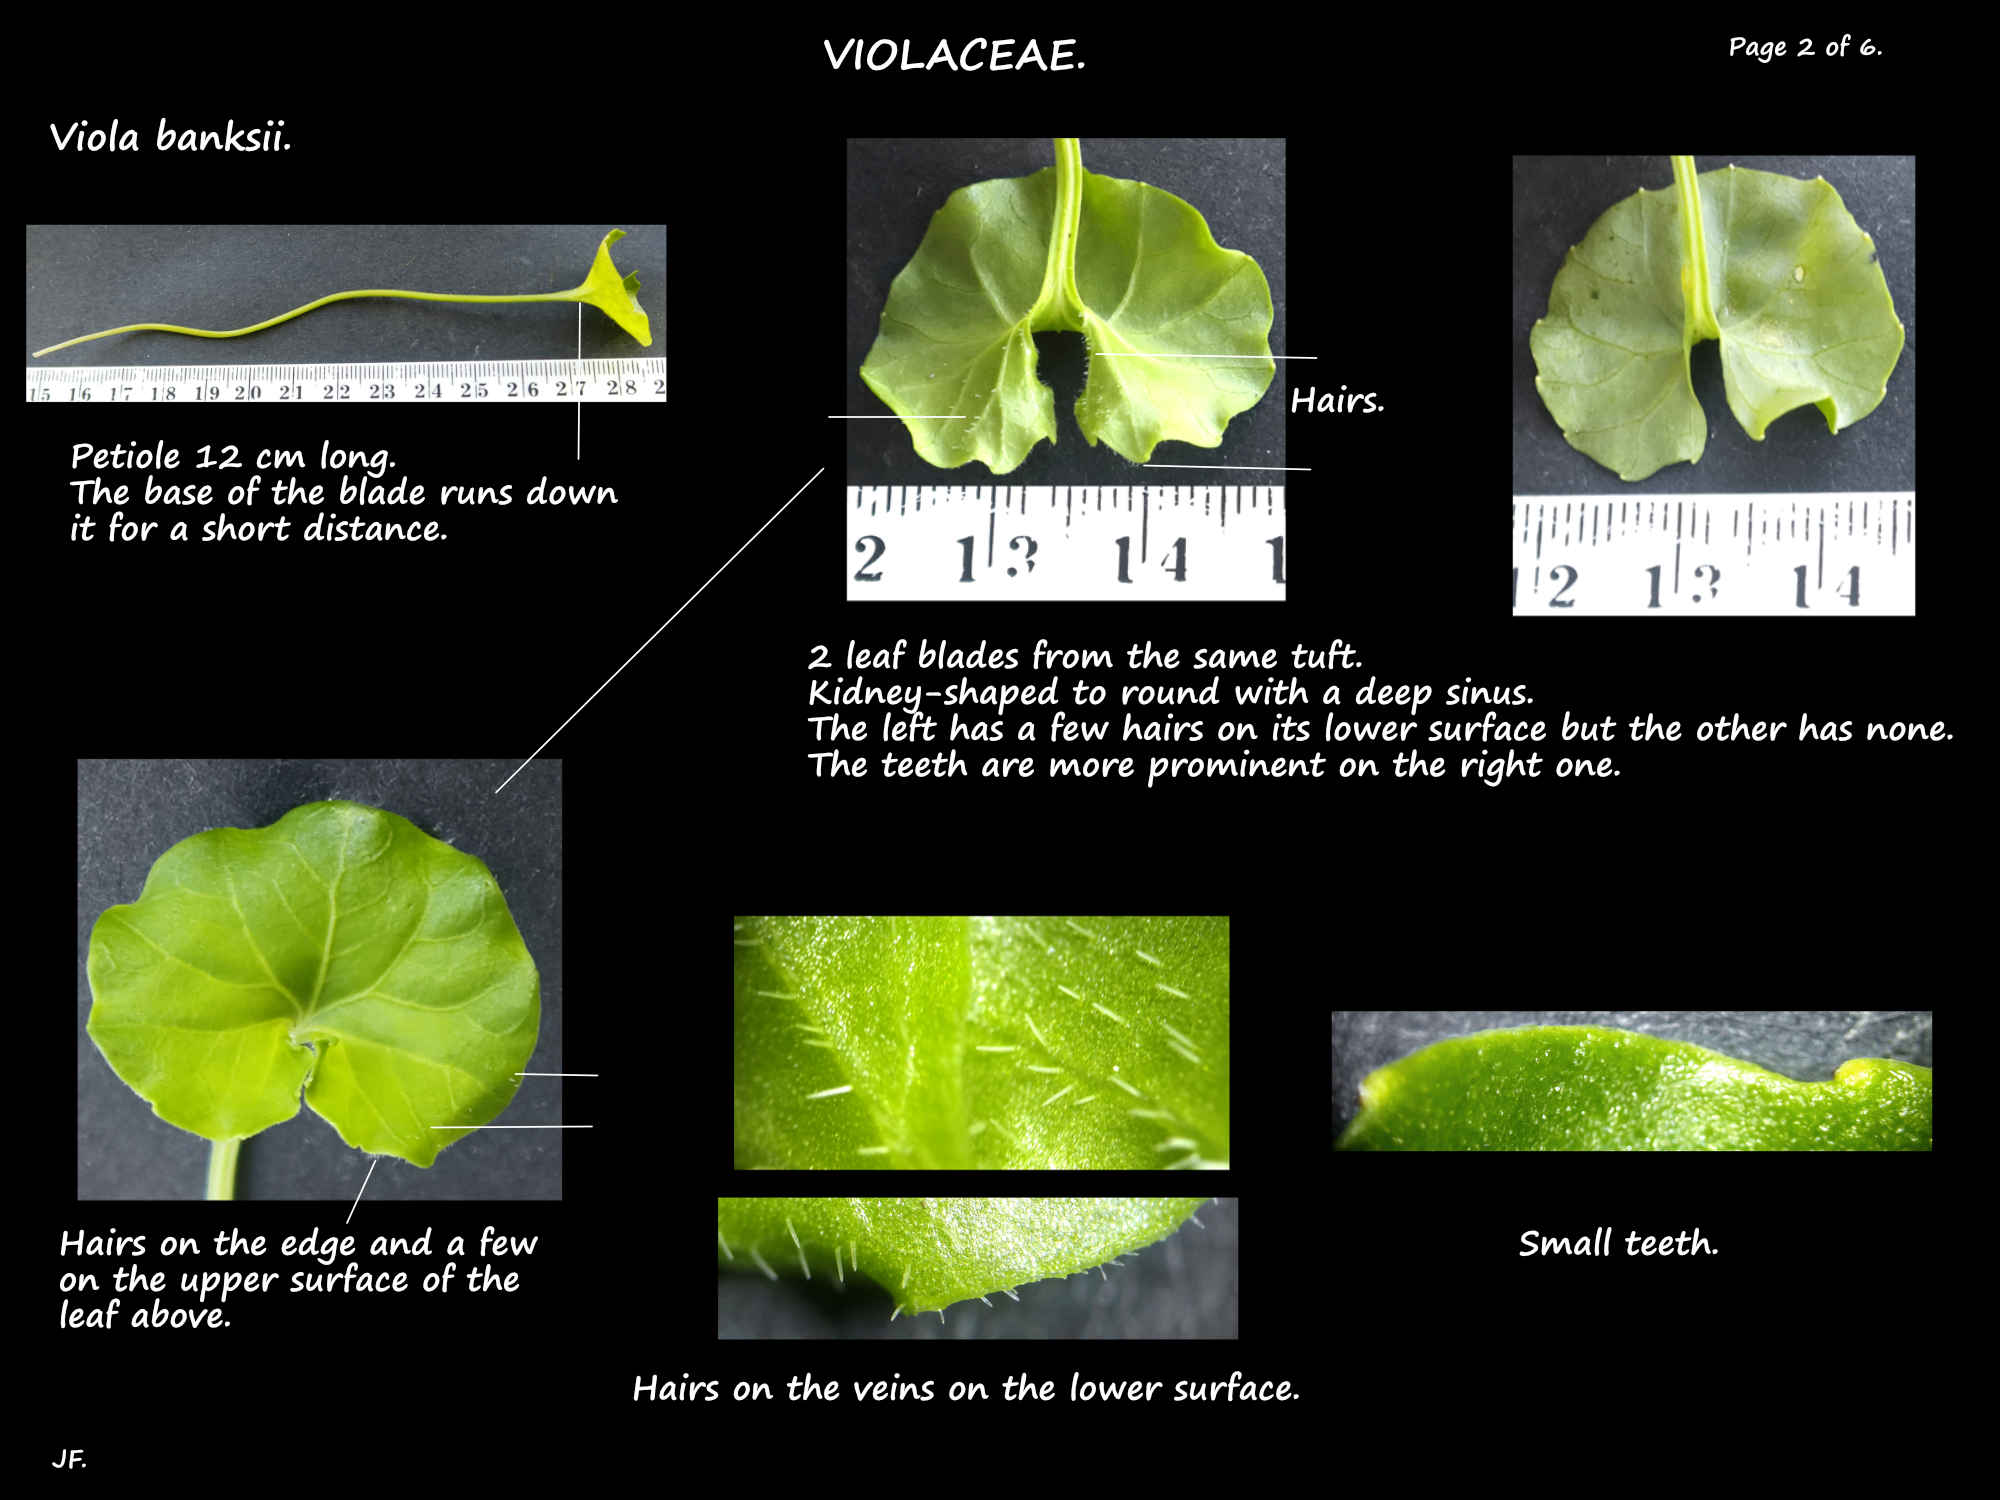 2 Viola banksii leaves may have hairs